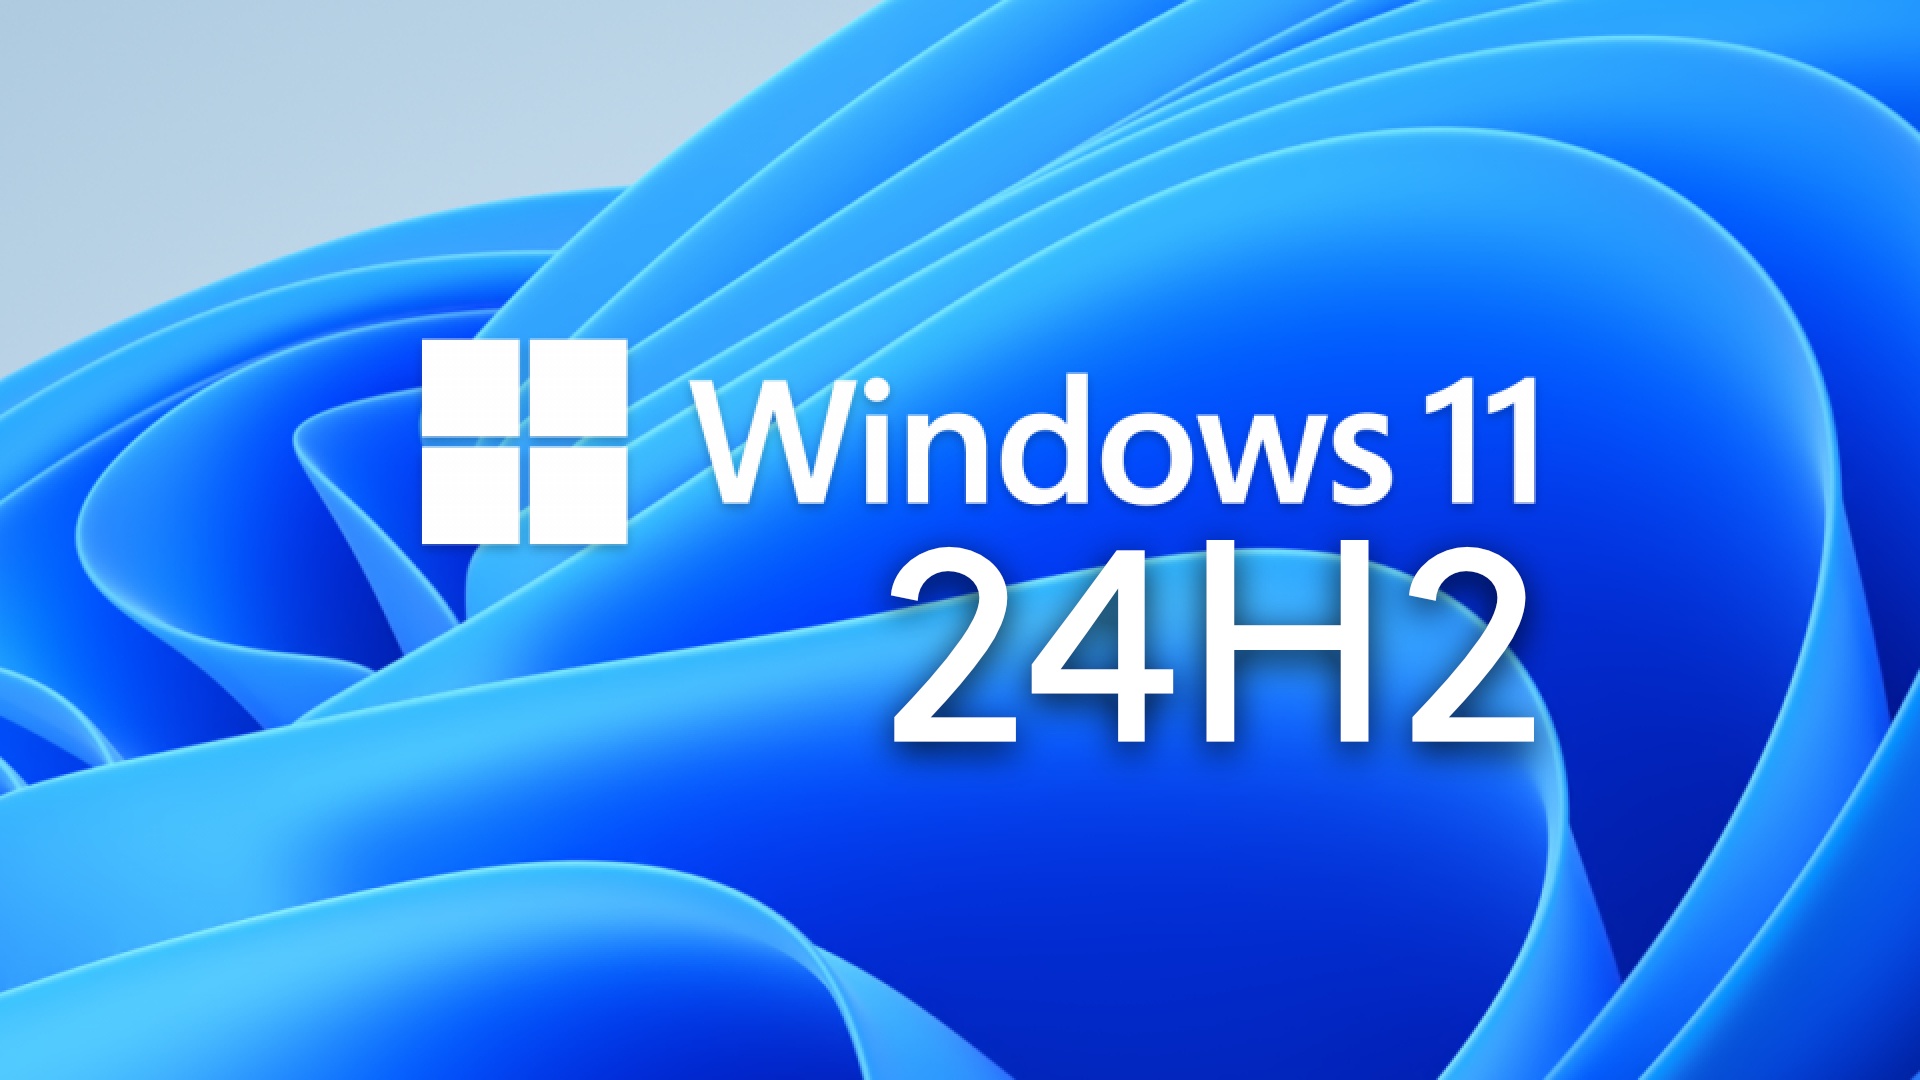 Windows 11 24H2: Alles, was ihr zum großen Windows-Update wissen müsst